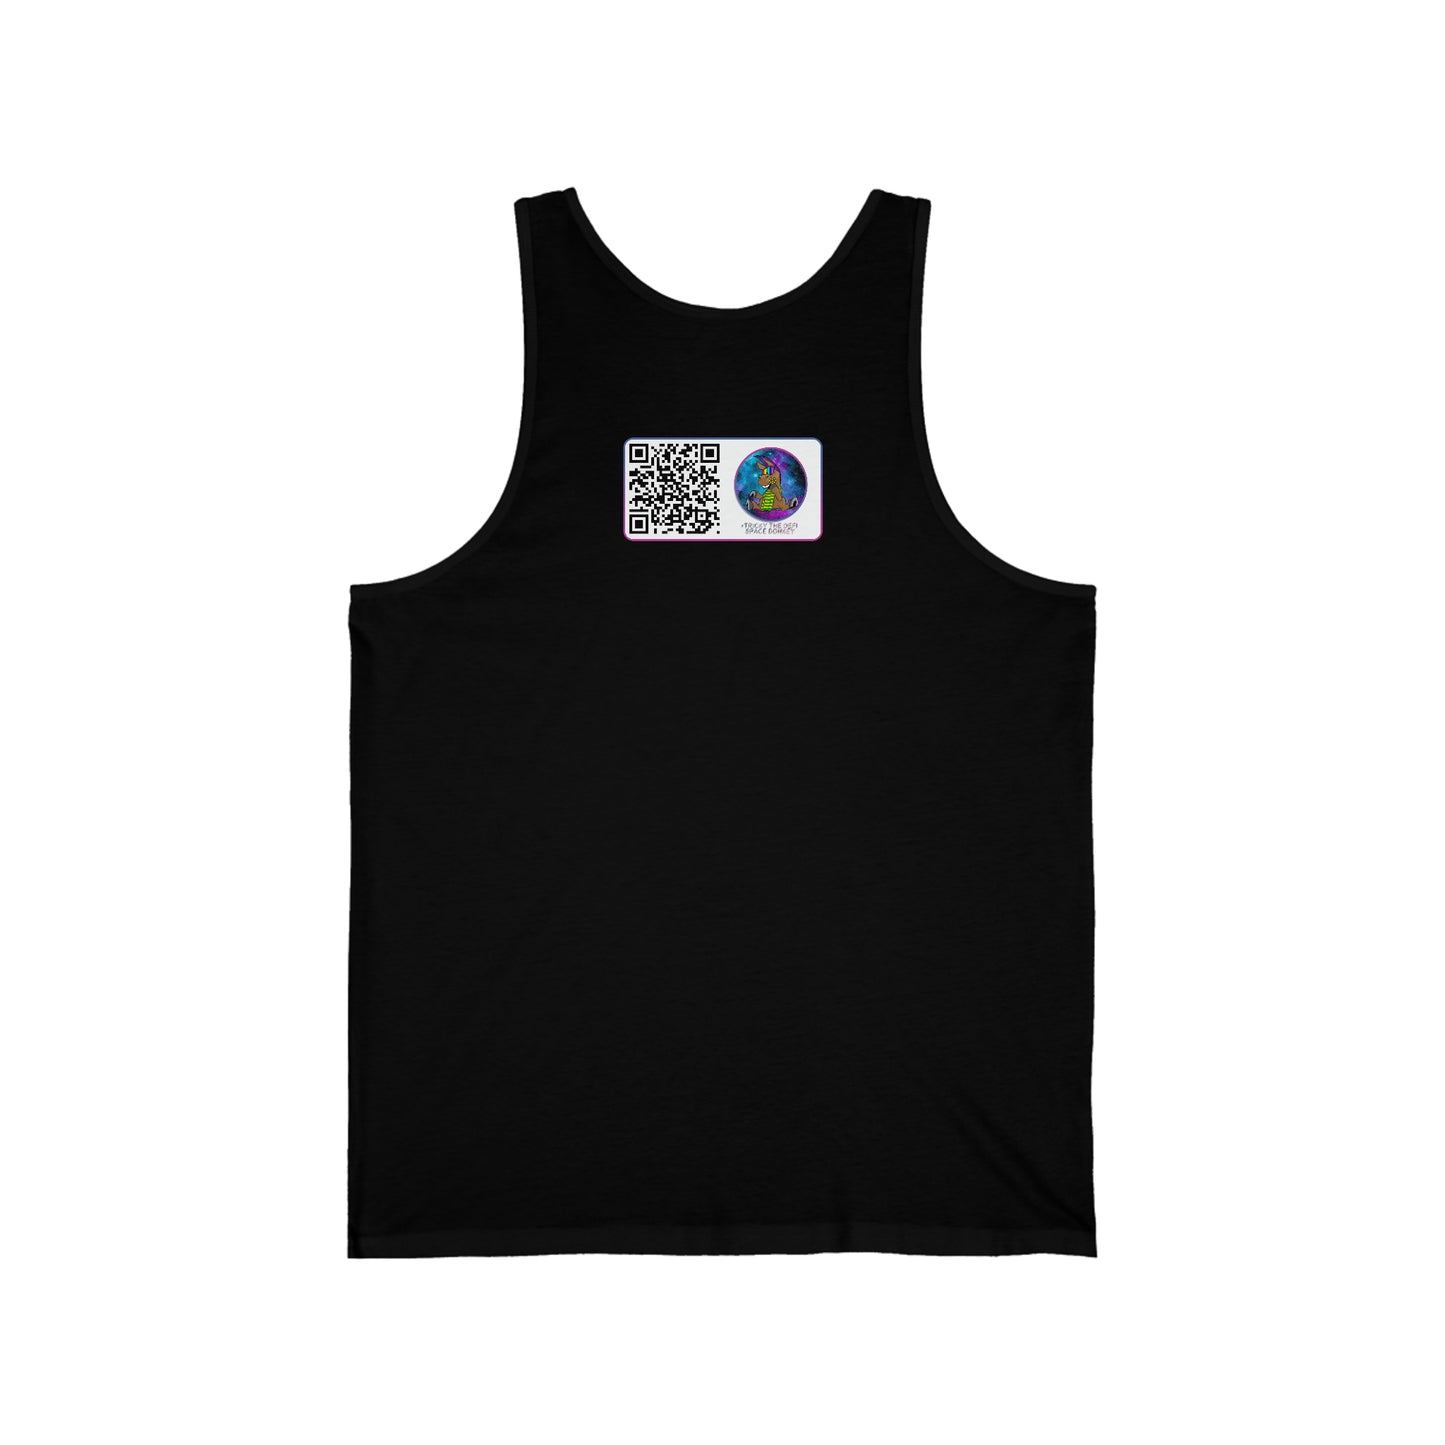 Burros espaciales DeFi #24 Camiseta sin mangas unisex